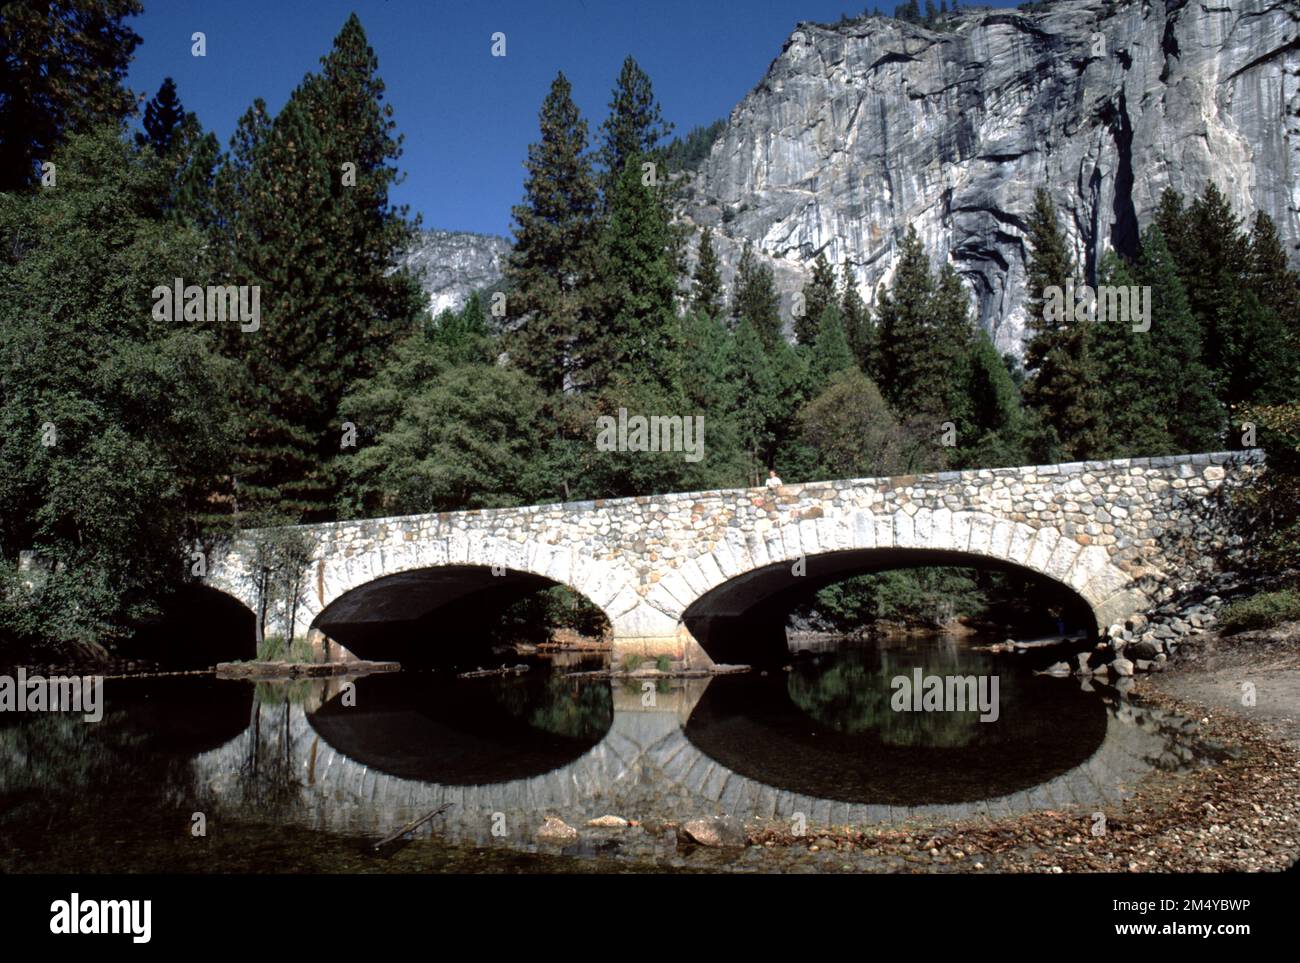 Yosemite National Park CA USA. 9/1984. Ponte sul fiume Merced e la cappella della Yosemite Valley. Il ponte di Ahwahnee fu costruito nel 1928 attraverso la Merced con tre archi, uno che si estende per 42 piedi (13 m) e gli altri che si estende per 39 piedi (12 m), per una lunghezza totale di 122 piedi (37 m). Il ponte è largo 39 piedi (12 m) con una carreggiata di 27 piedi (8,2 m), un marciapiede di 5 piedi (1,5 m) e un percorso di 7 piedi (2,1 m). Porta la Mirror Lake Road, che incornicia una vista di Half Dome per il traffico in direzione est. Il costo era di $59.913,09. La Cappella fu costruita nel 1879 sotto gli auspici dell'Associazione della Cappella dell'Unione Yosemita. Foto Stock